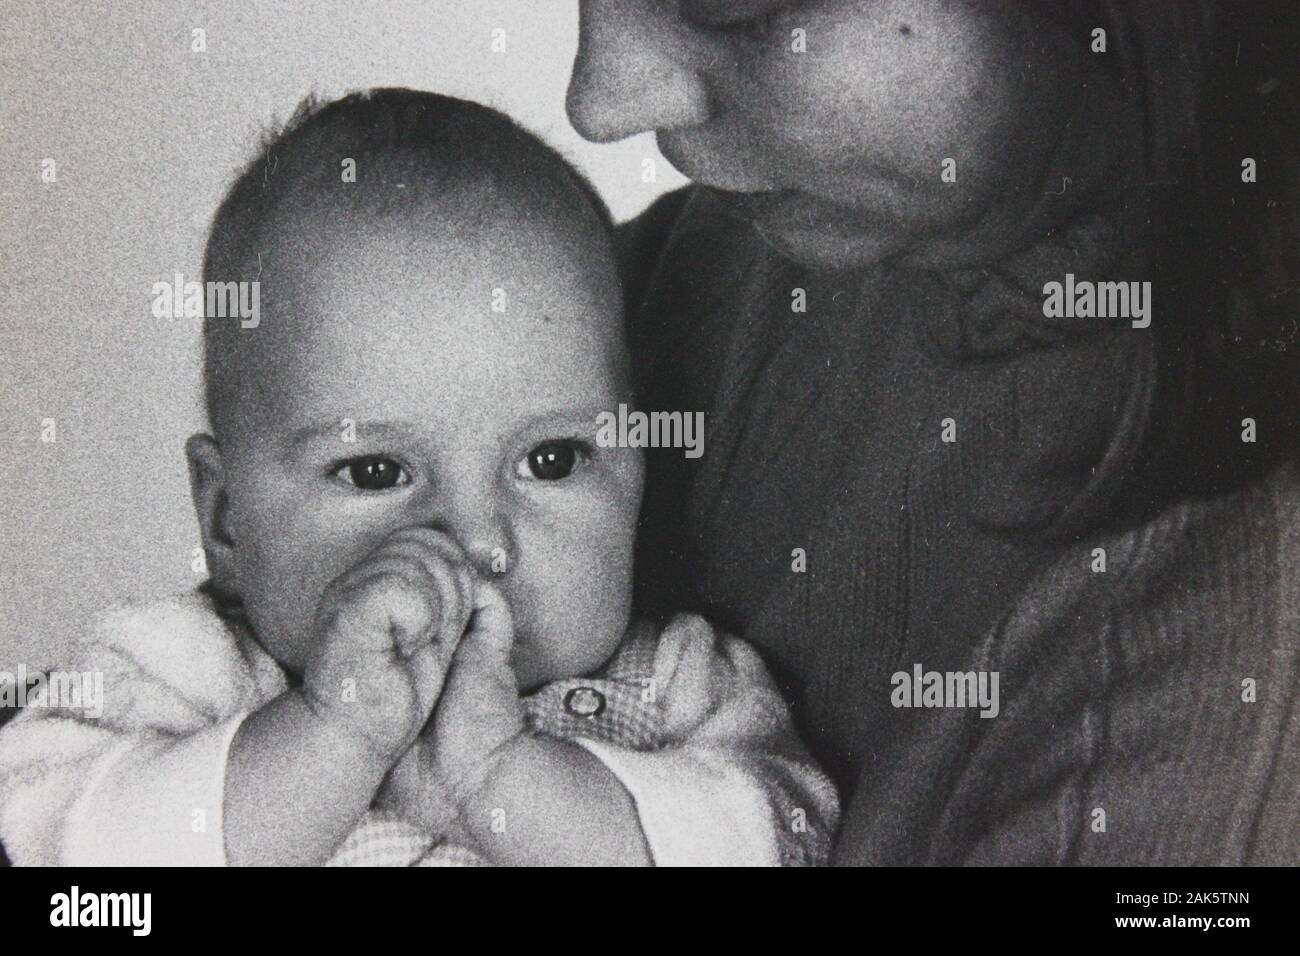 Belle photographie vintage noir et blanc des années 1970 d'un bébé assis sur les genoux de sa mère Banque D'Images